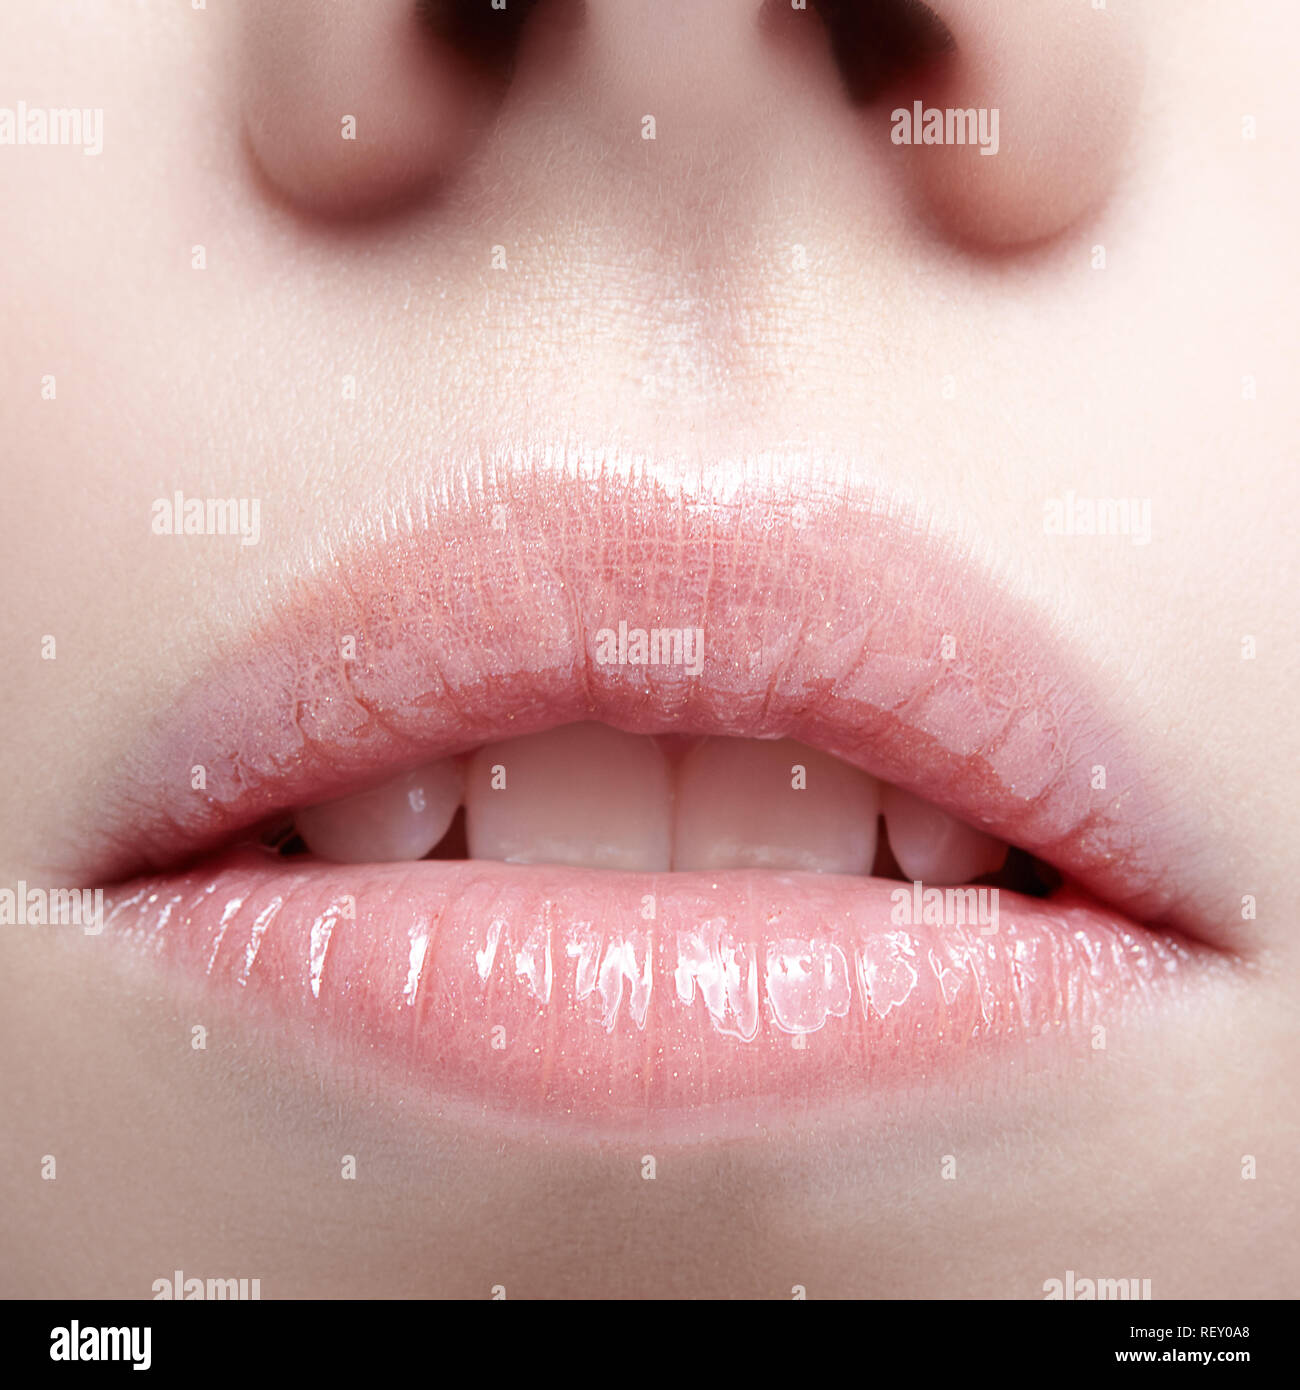 Closeup shot of human female face. Woman with pink plump lips makeup. Stock Photo